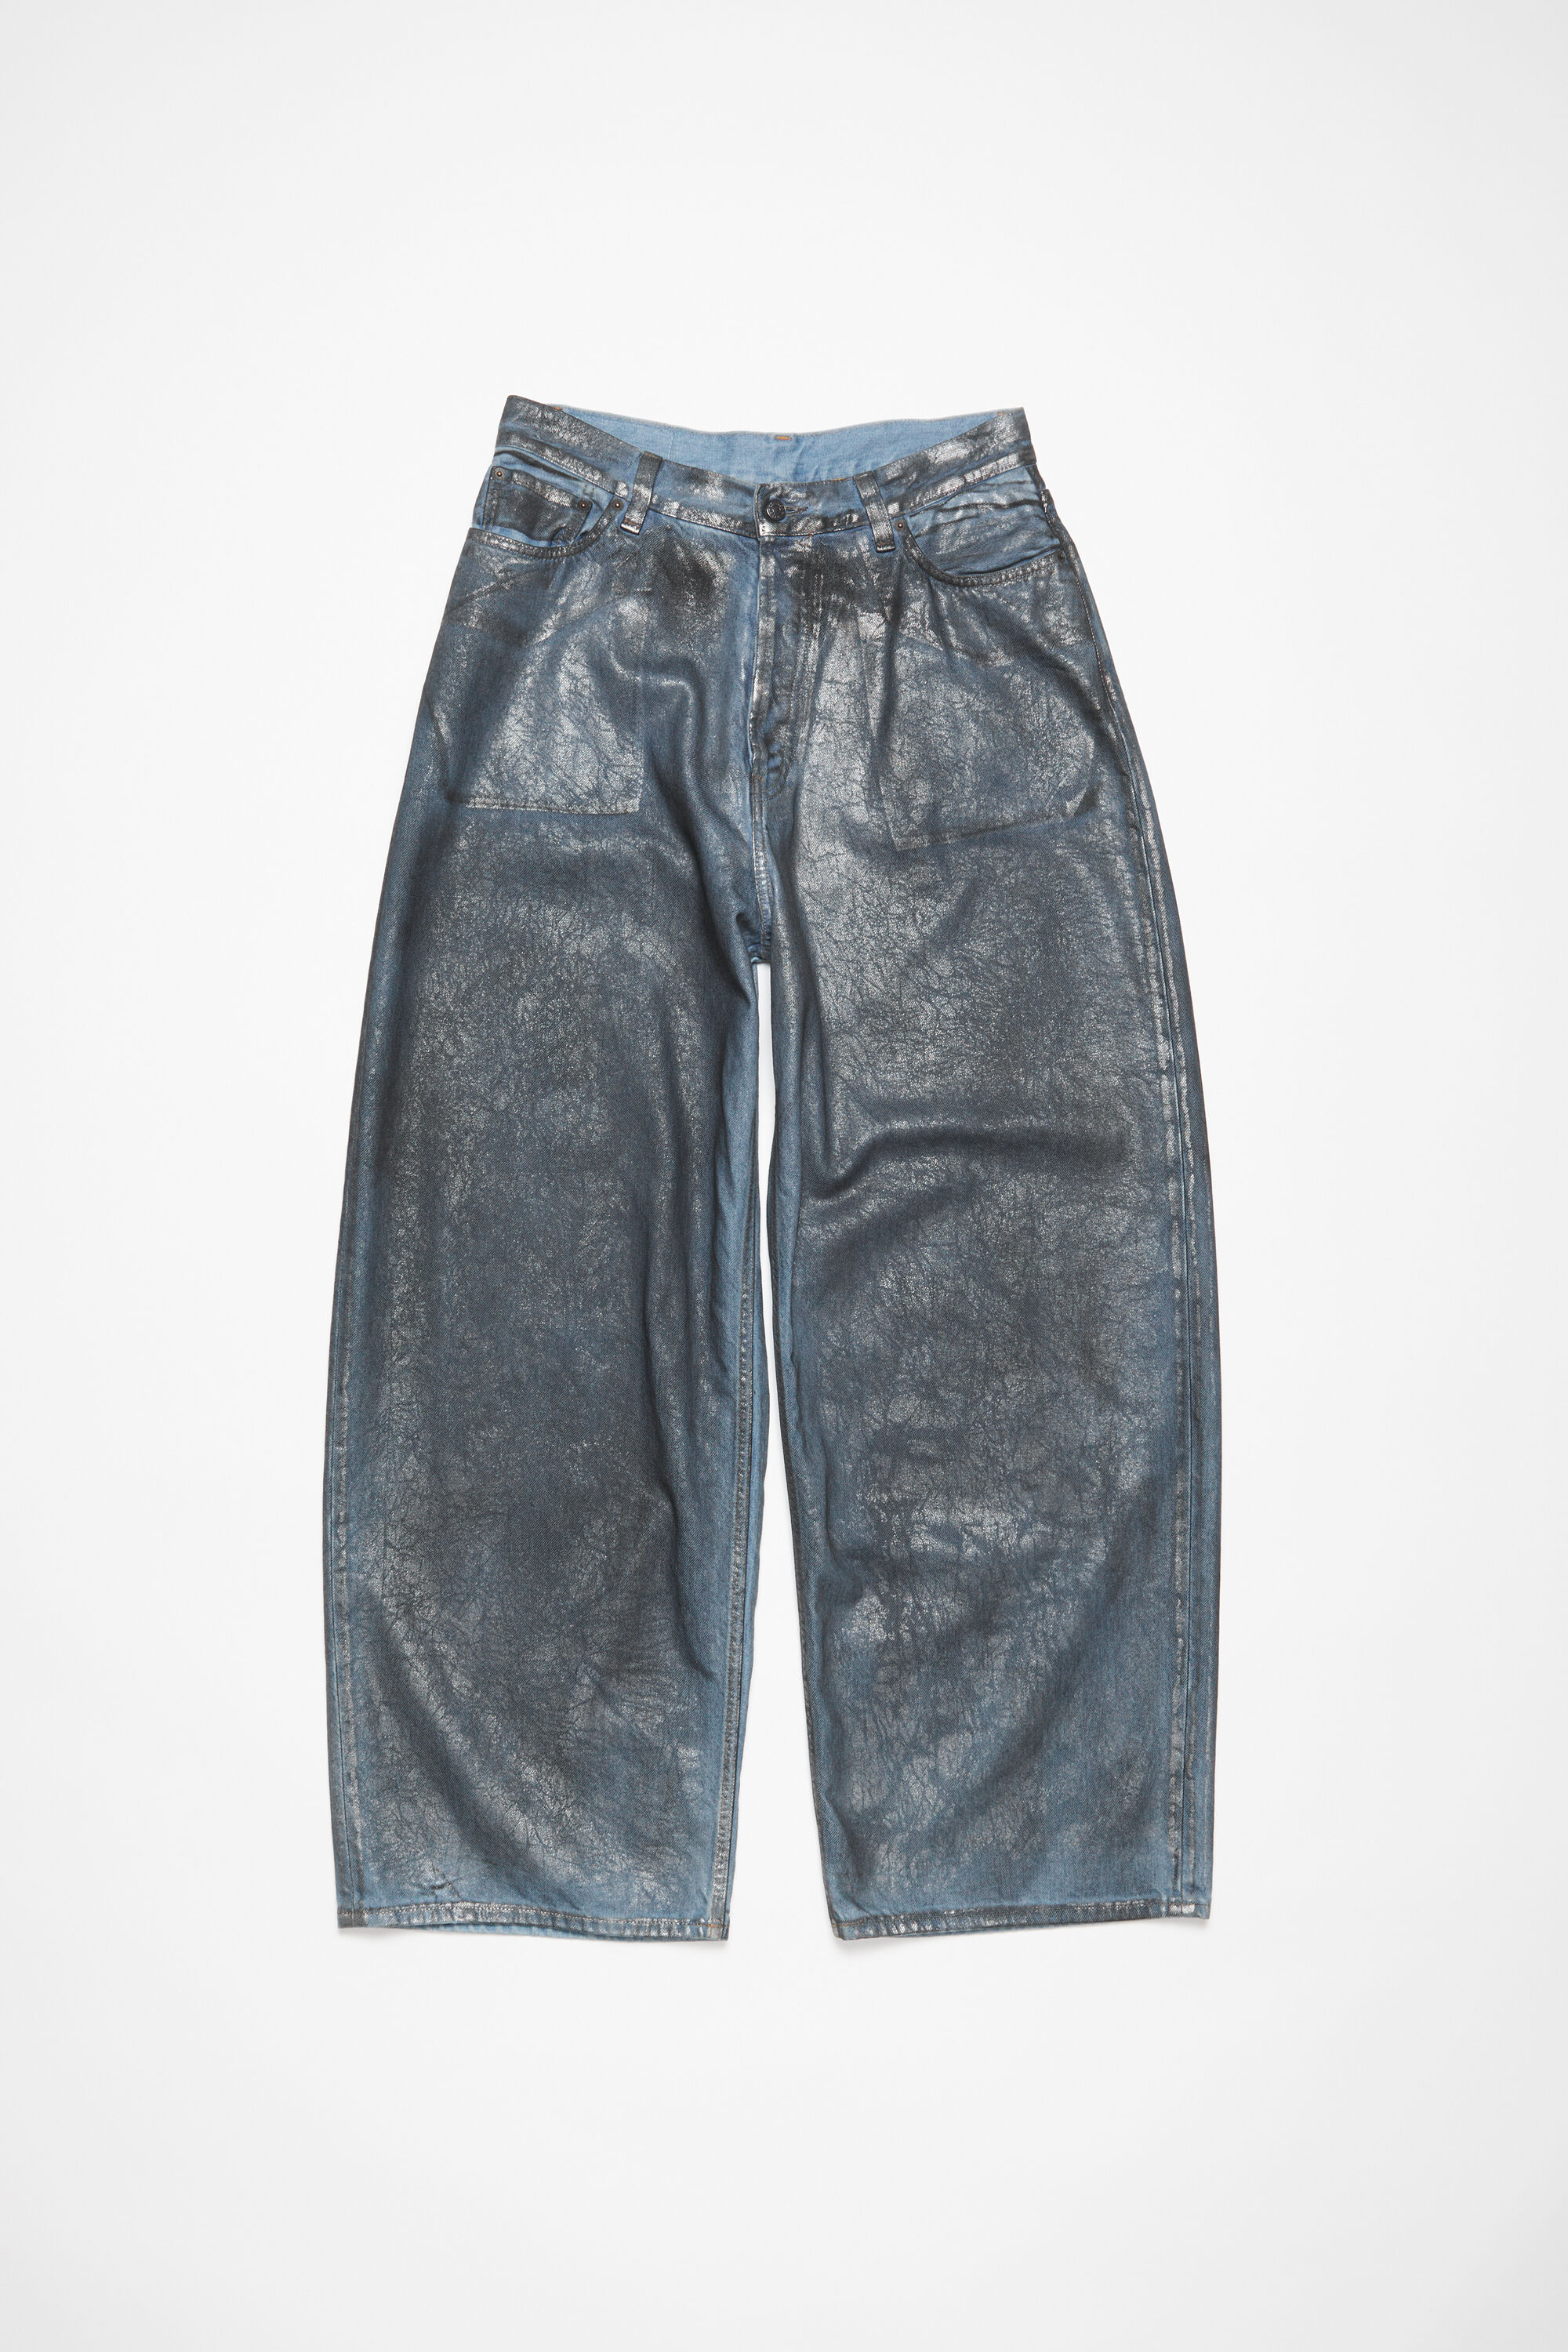 Acne Studios - Super baggy fit jeans - 2023M - Silver/blue